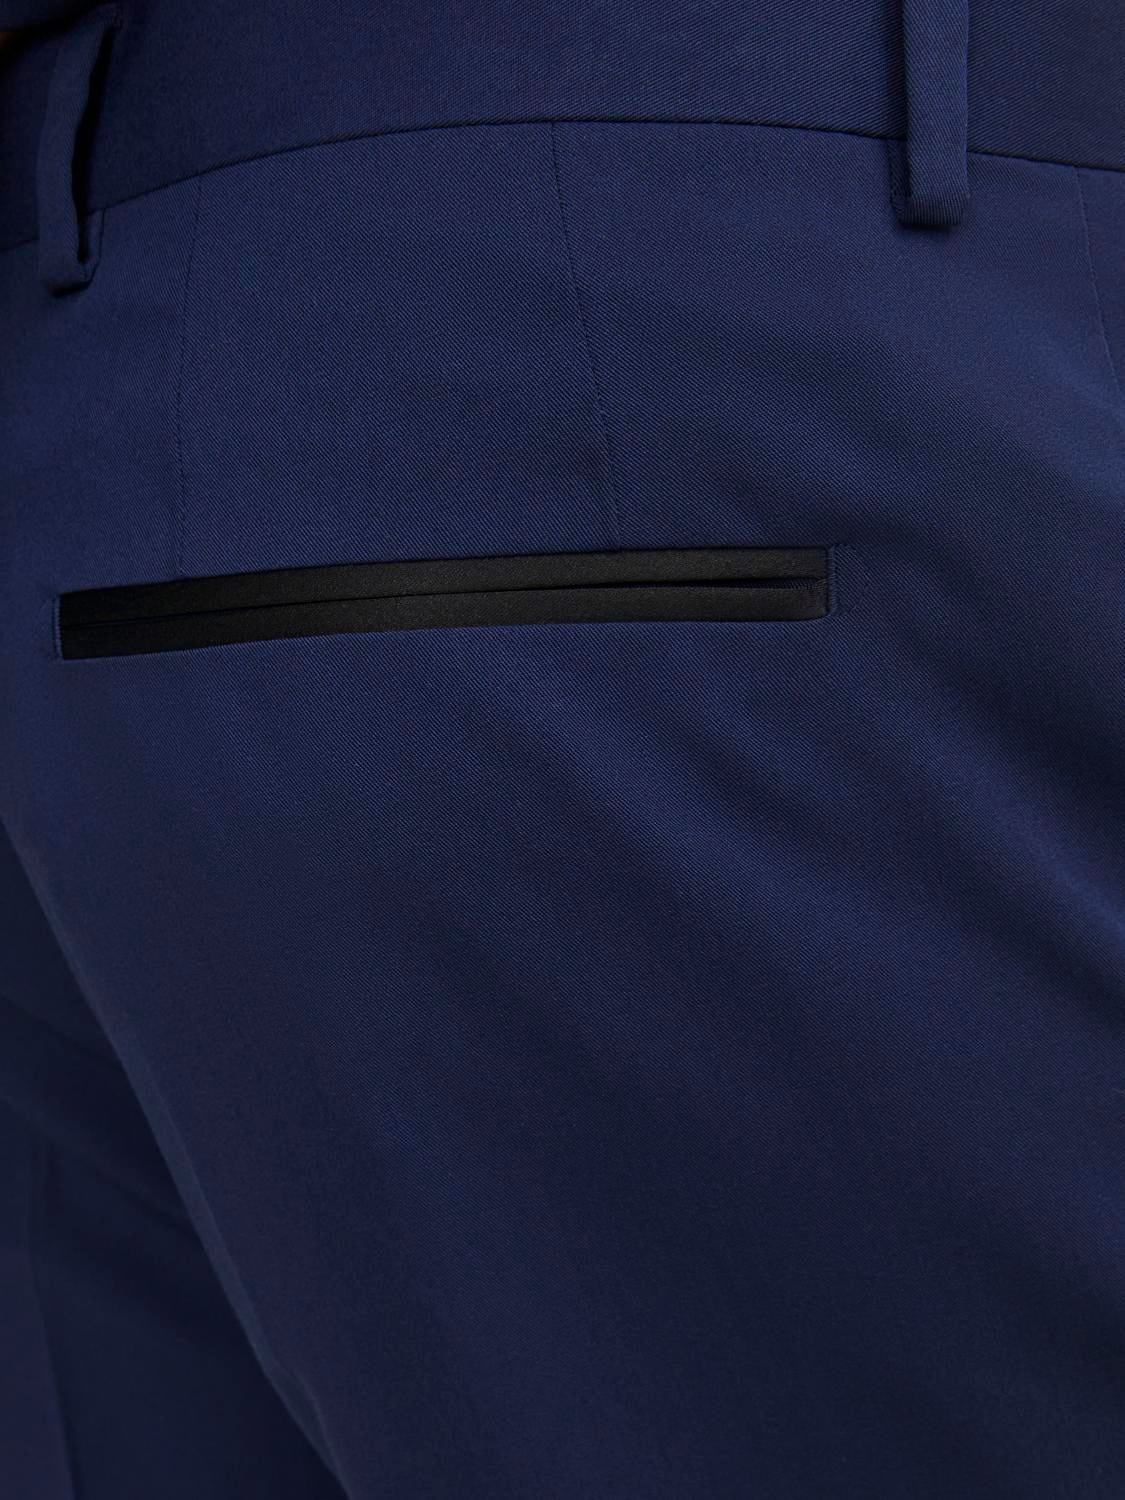 Jack & Jones JPRFRANCO Super Slim Fit Tailored Trousers -Medieval Blue - 12245184